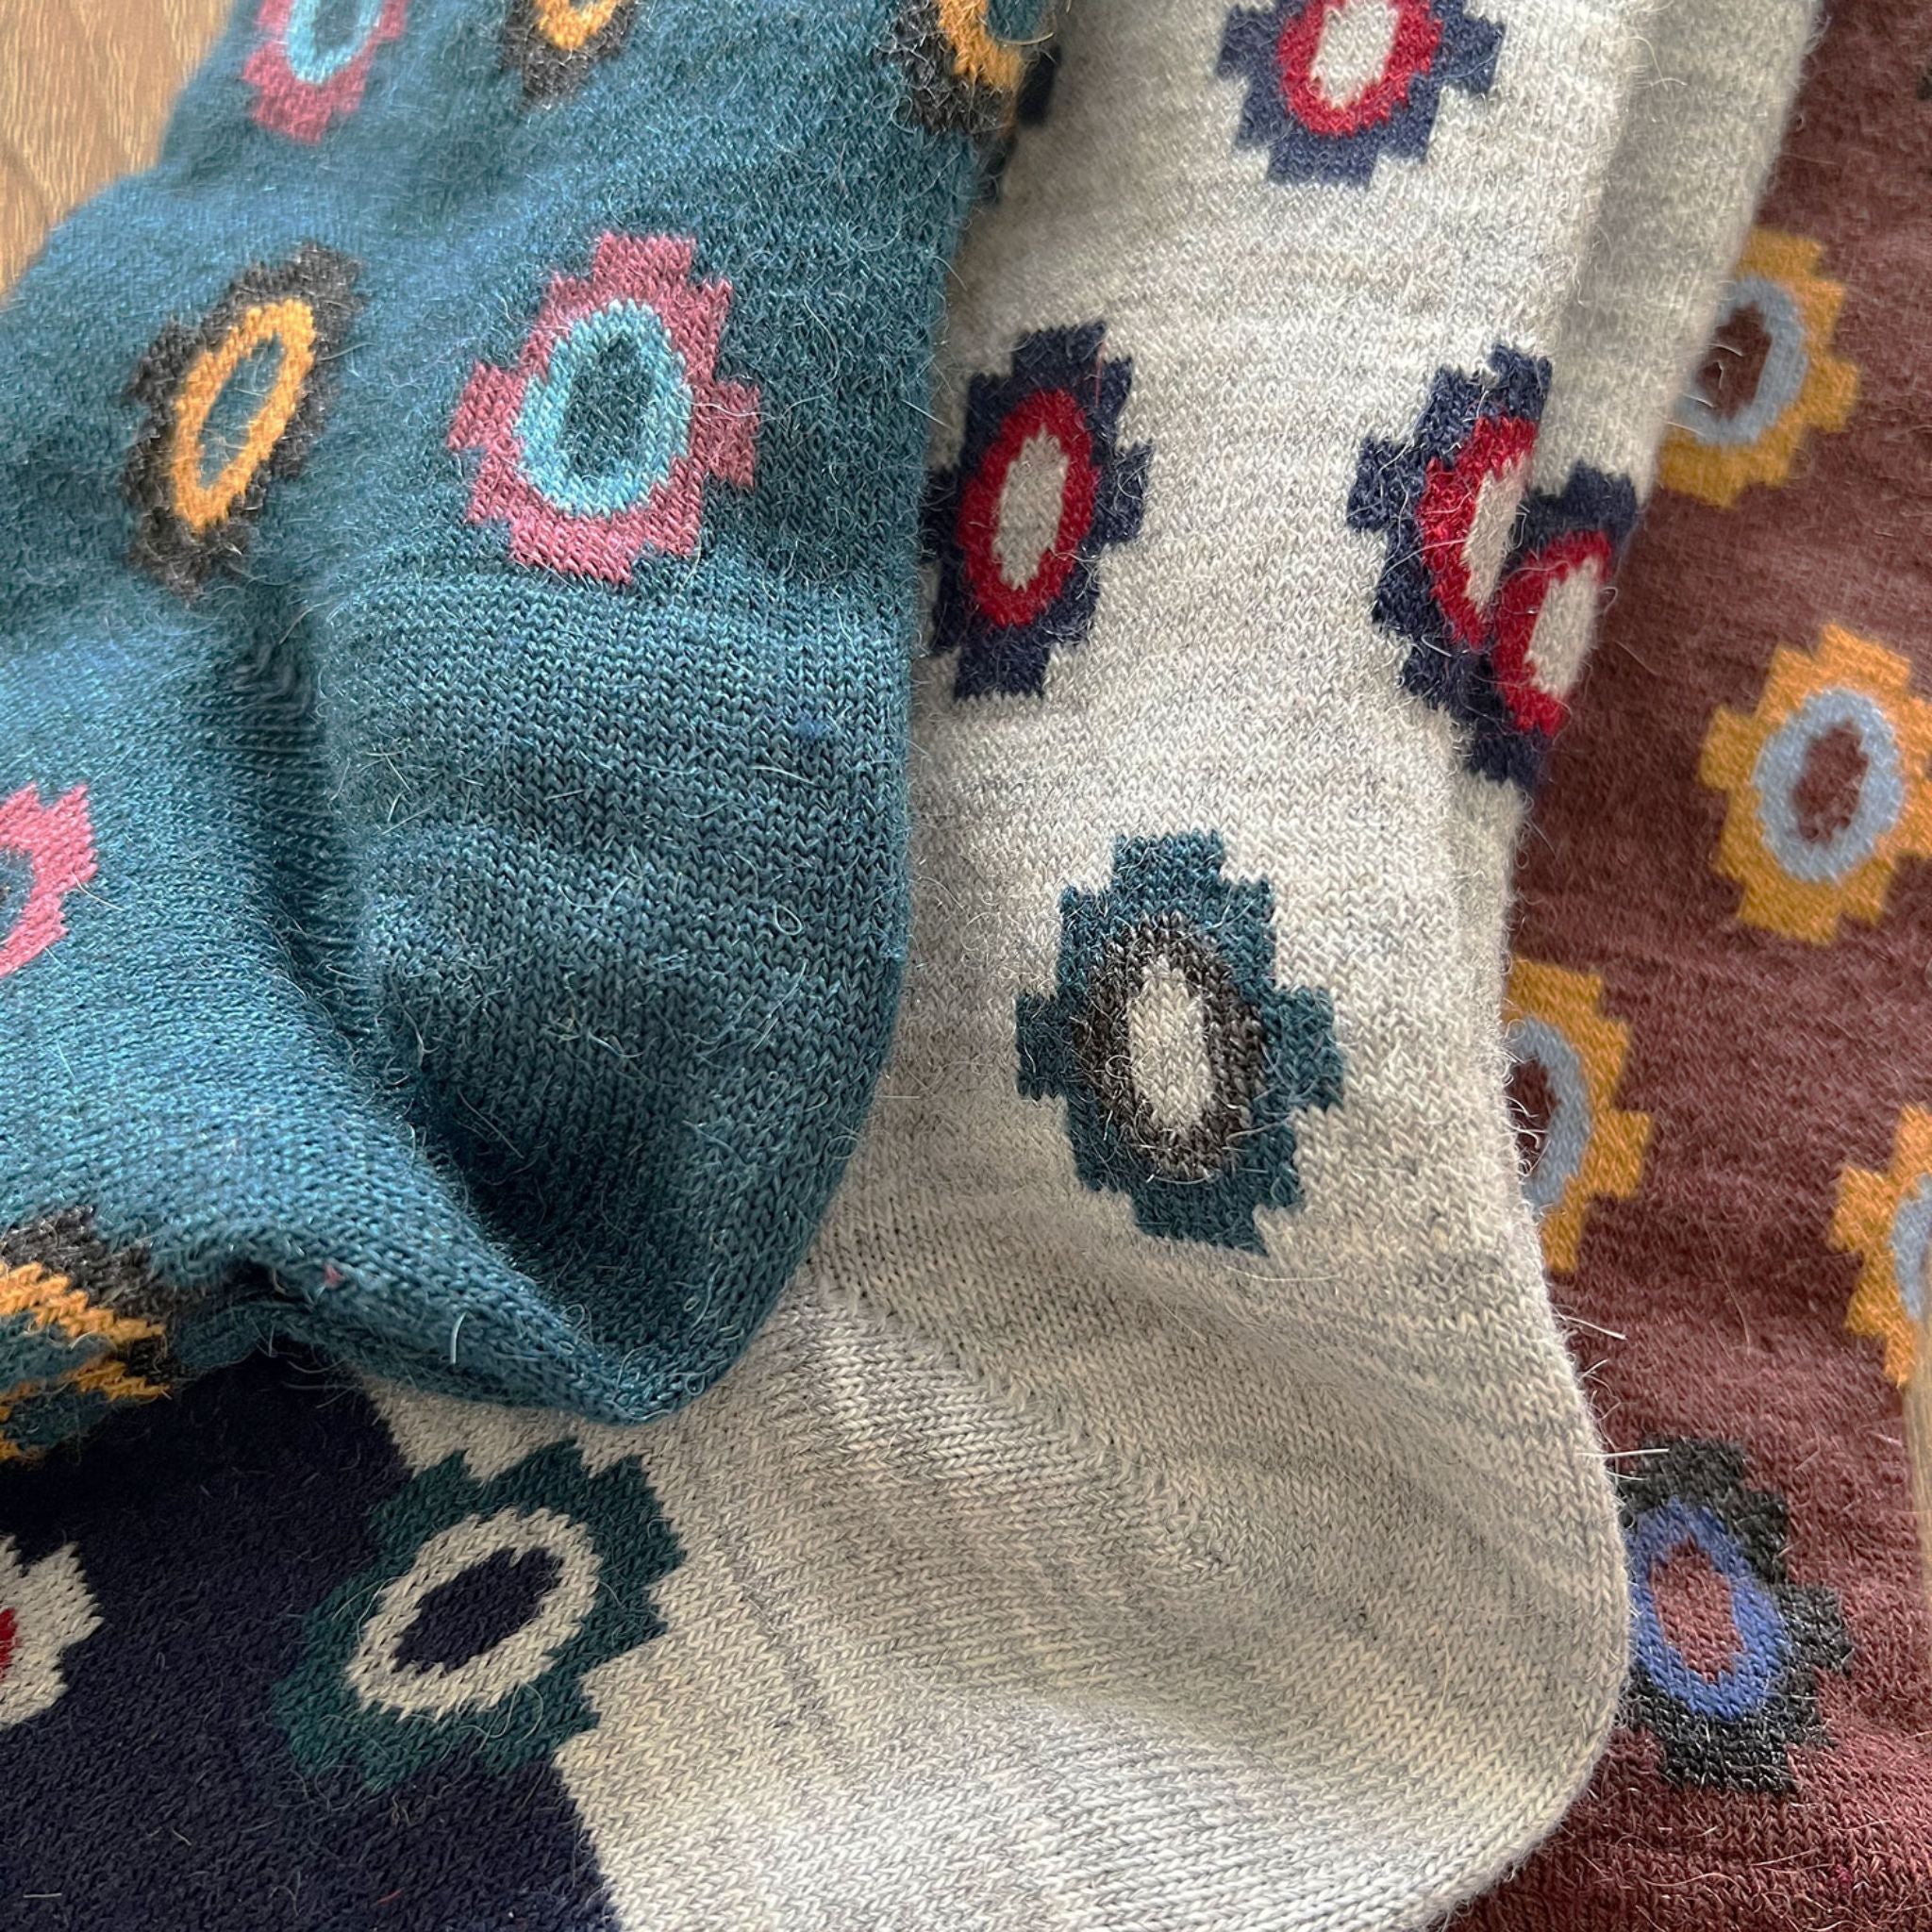 More Alpaca Socks